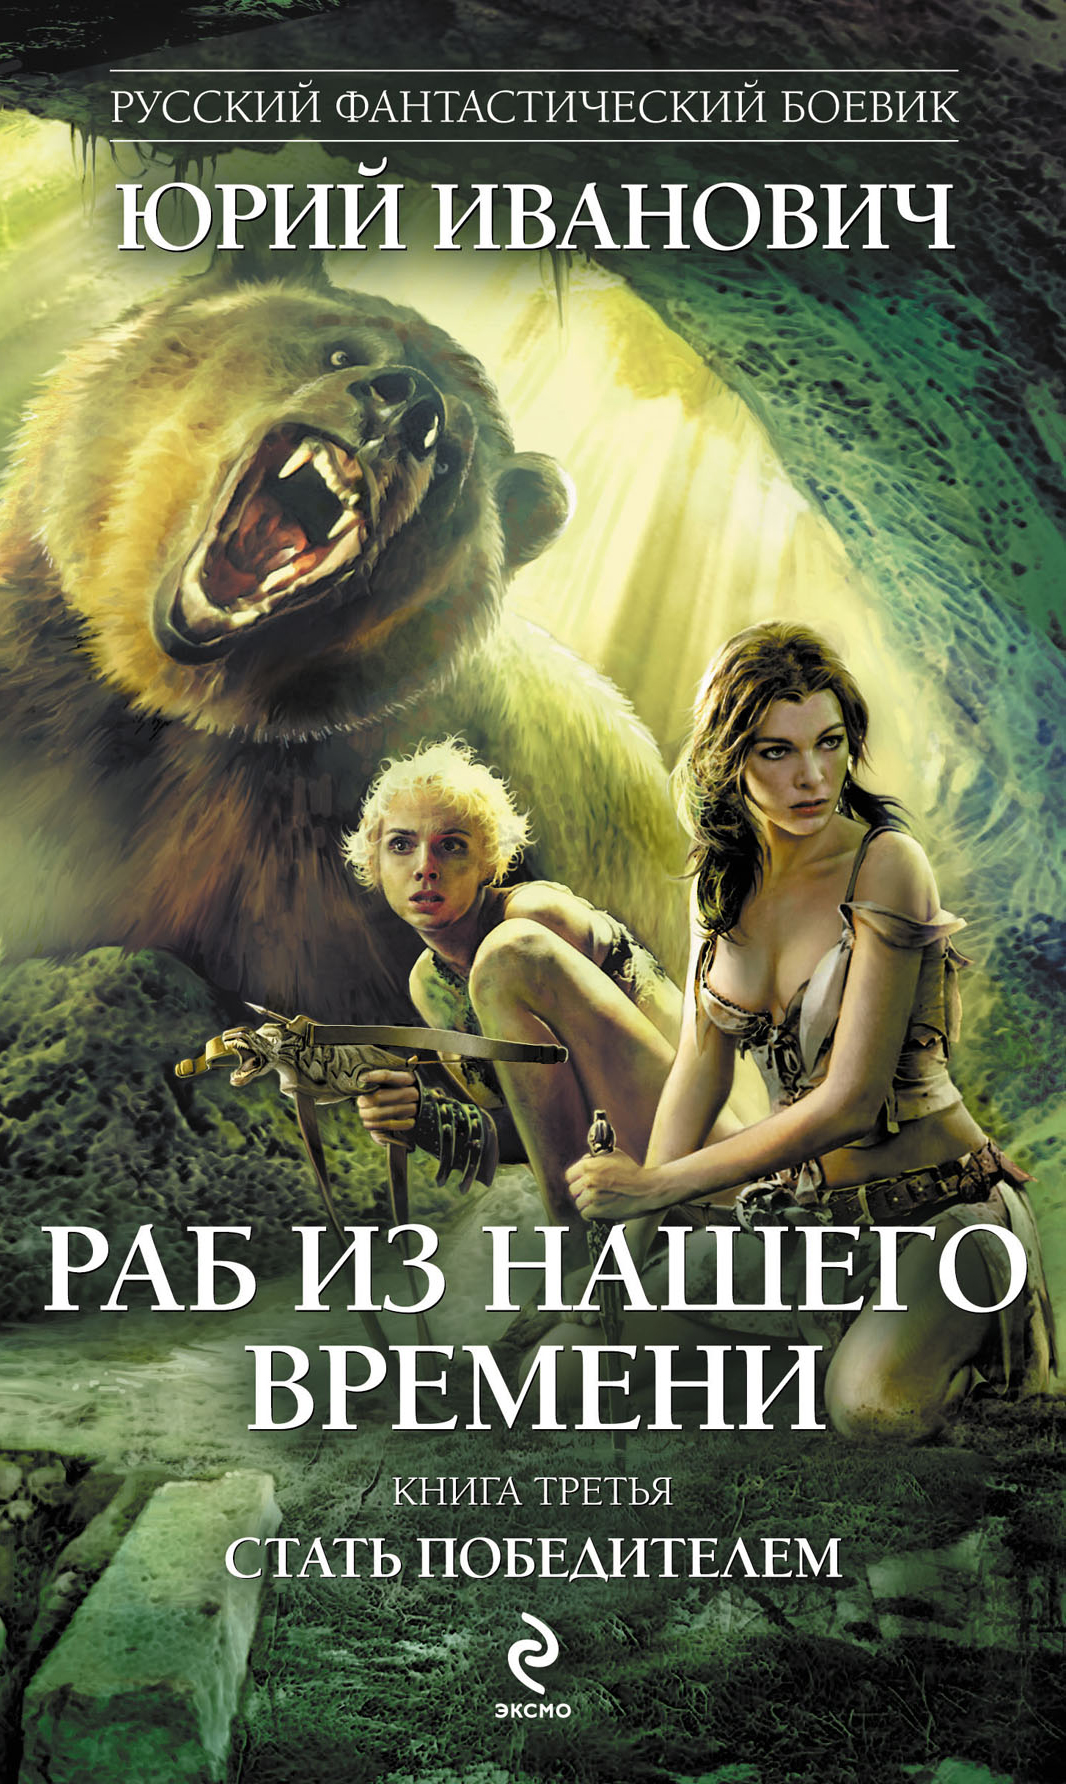 https://cdn.eksmo.ru/v2/ITD000000000188683/COVER/cover3d1.jpg